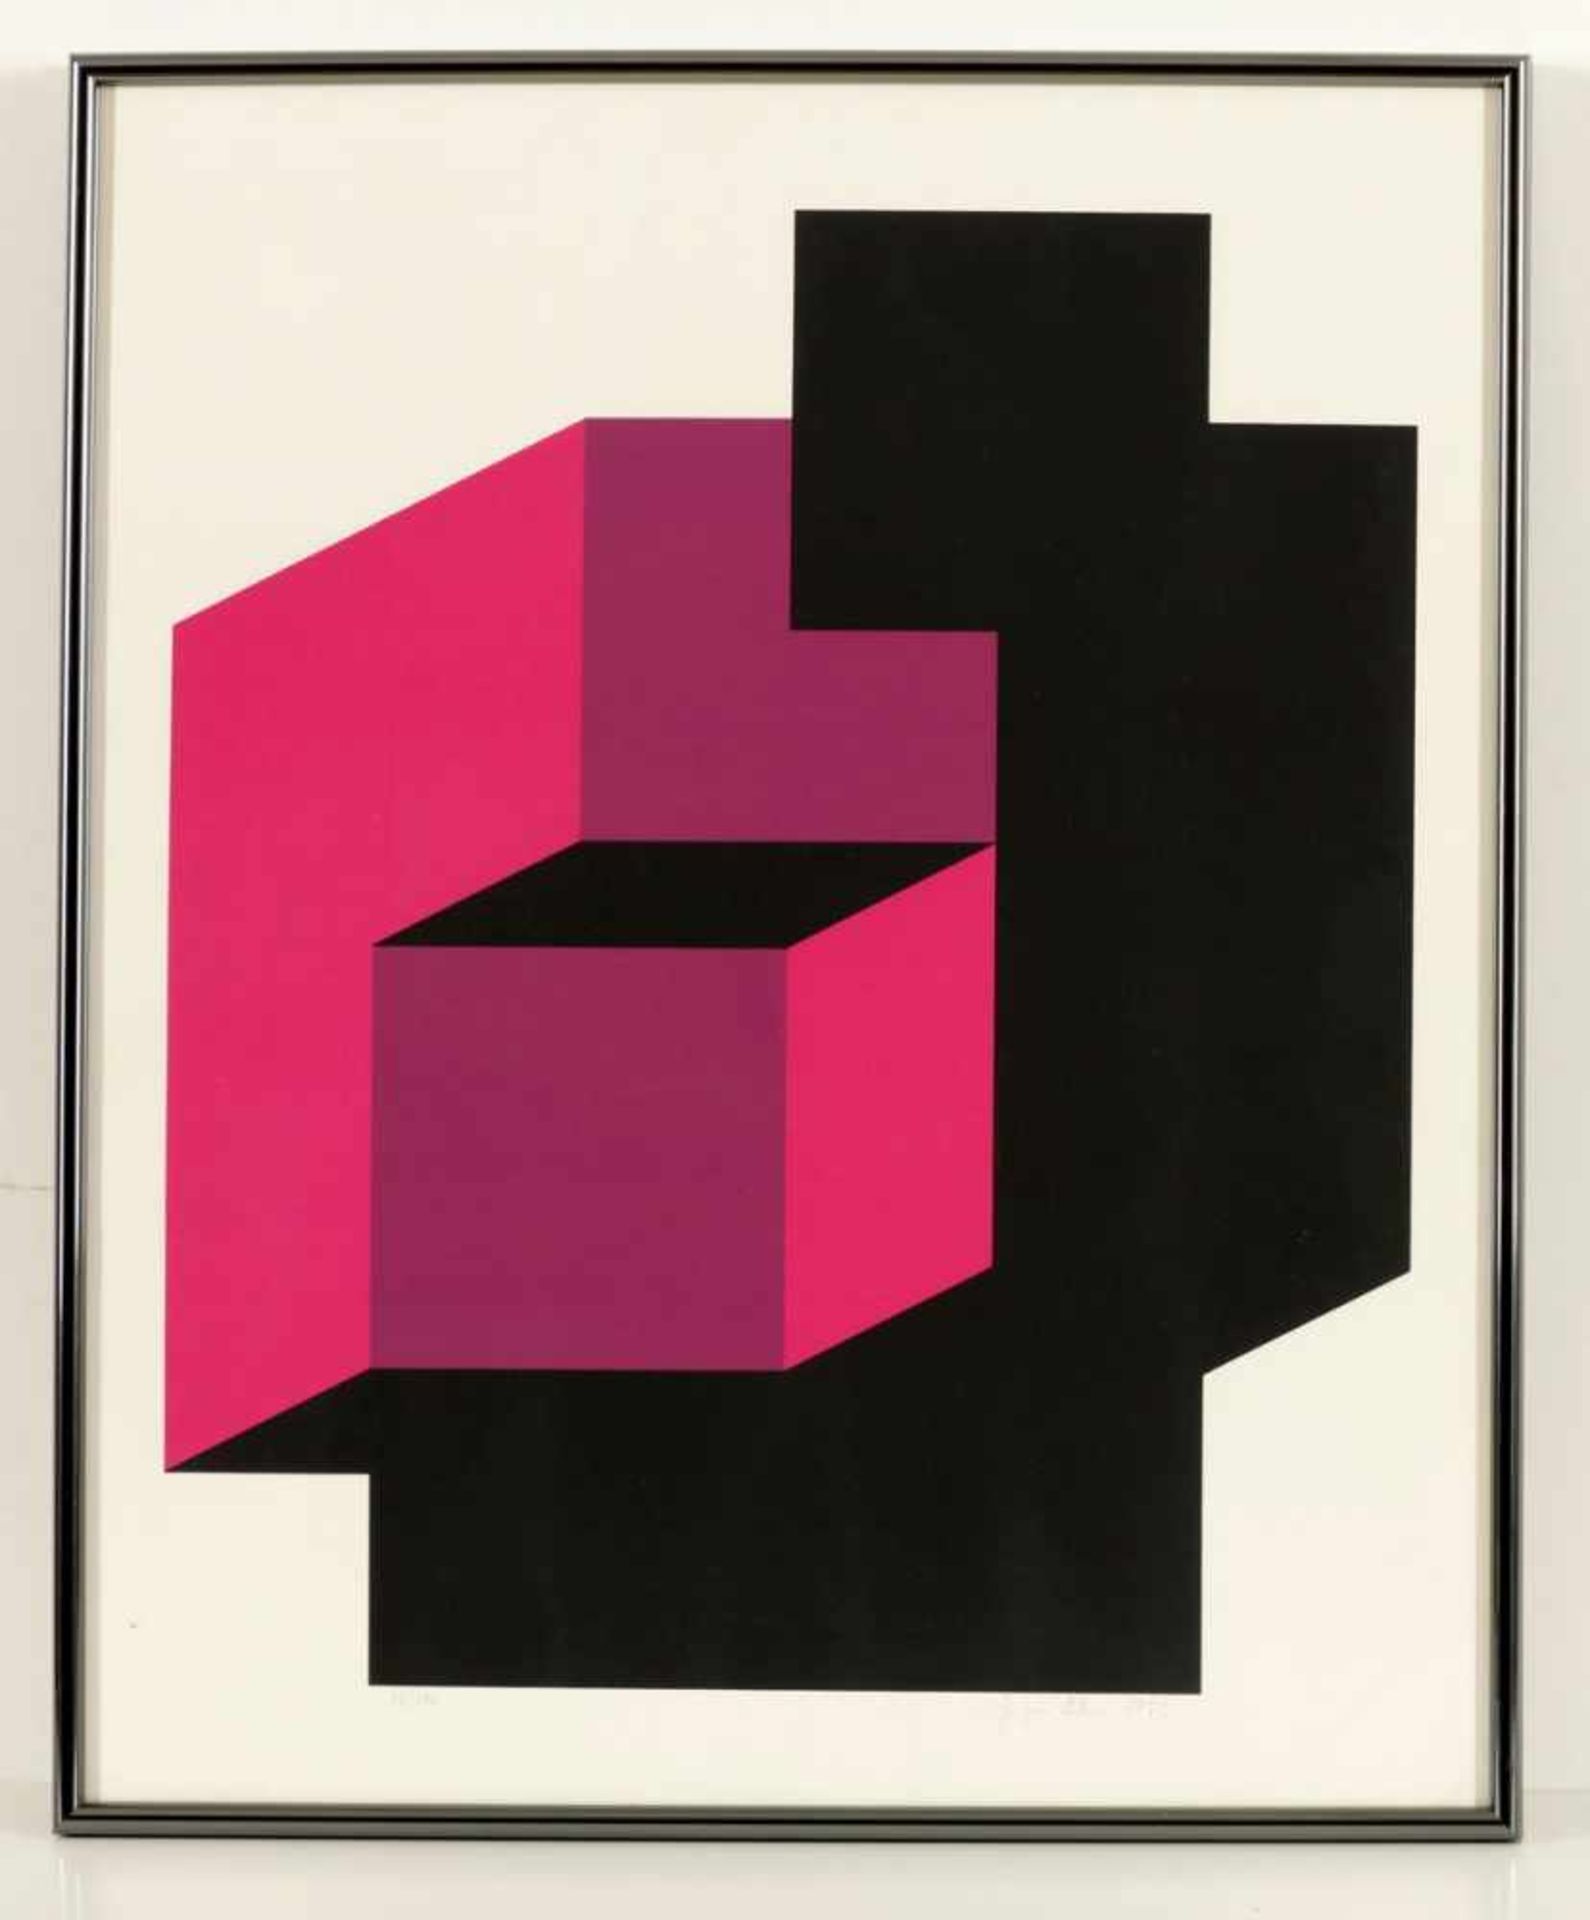 Jürgen Klein1924 Berlin - Komposition - Farbserigrafie/Papier. 85/100. 50,4 x 43 cm, 59 x 49 cm. - Bild 2 aus 2